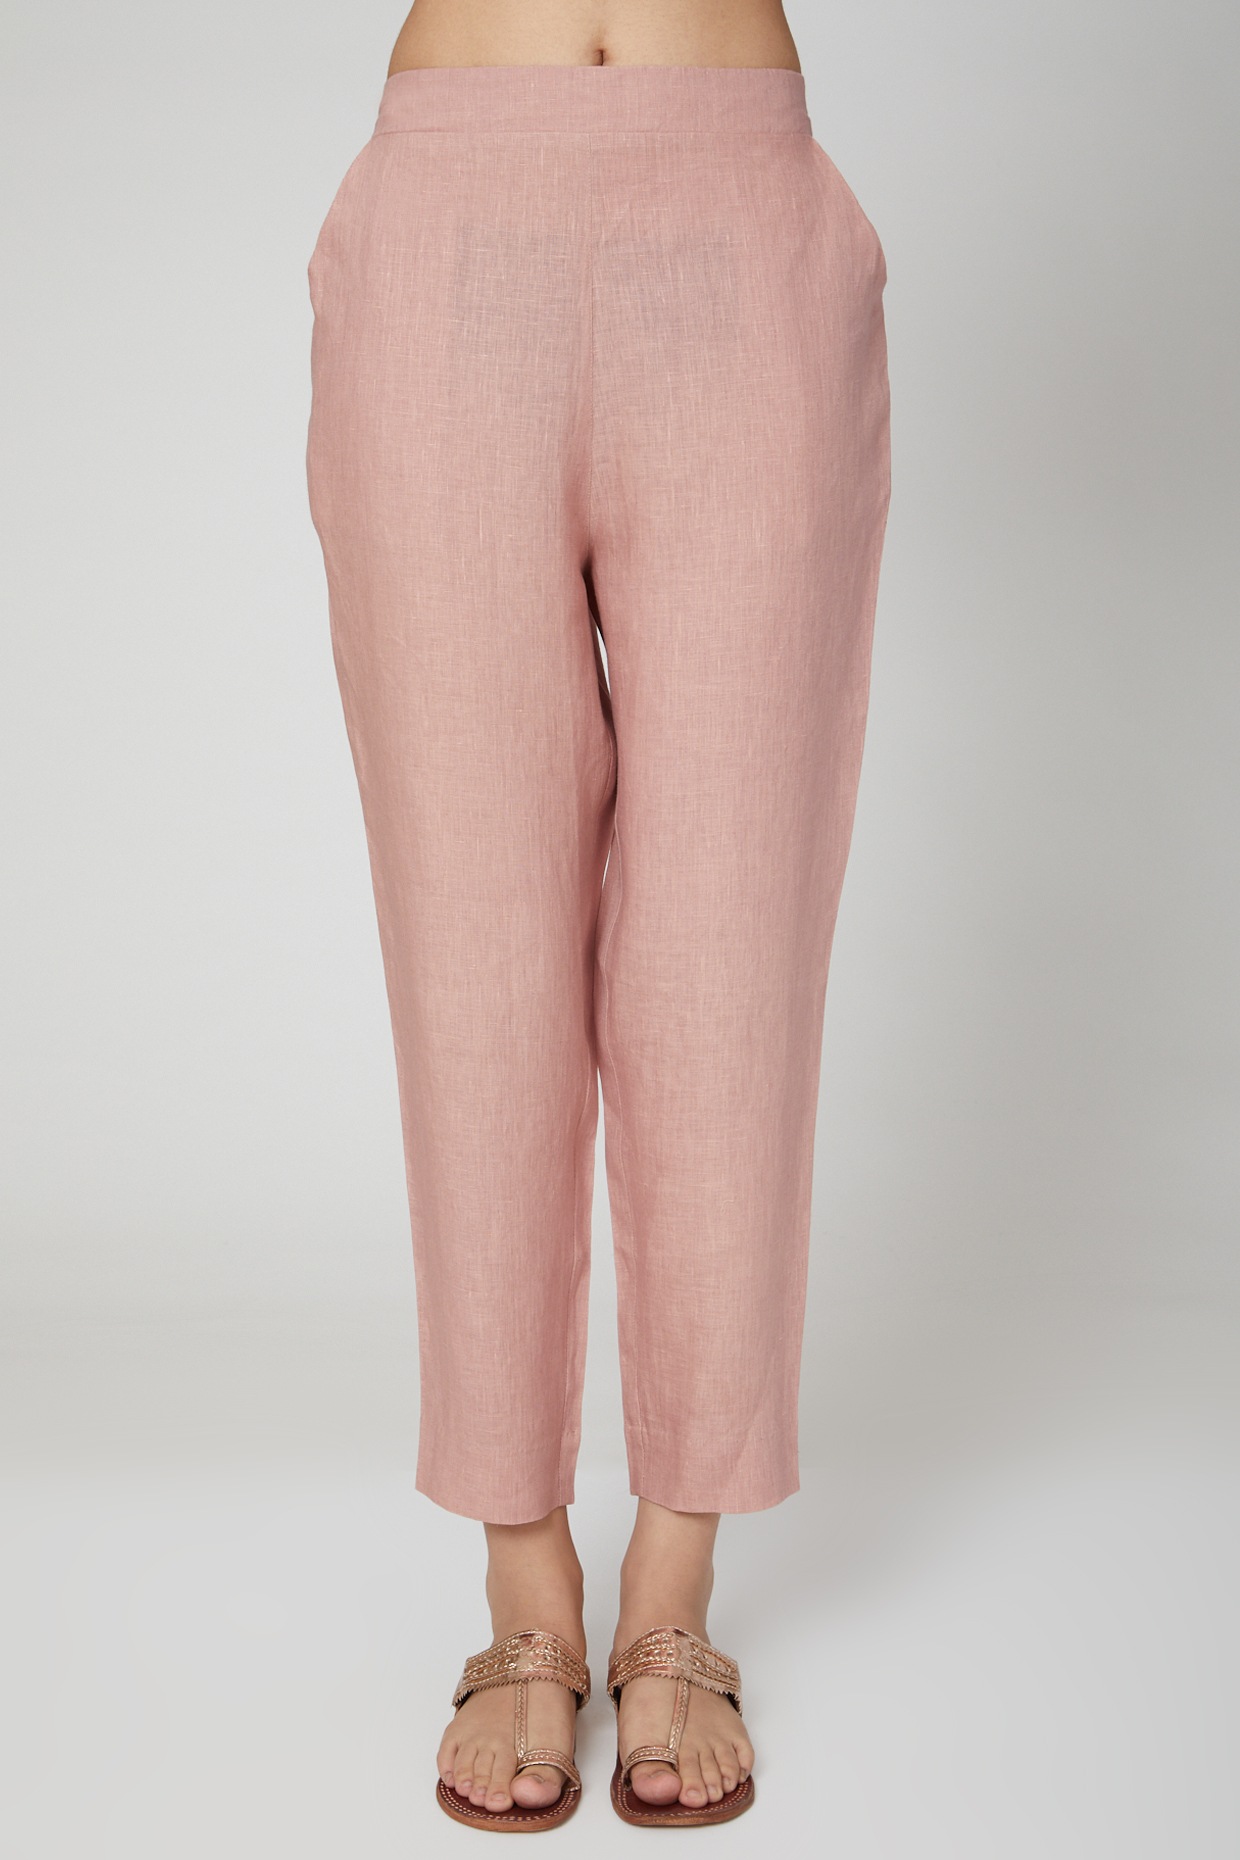 Wide leg trousers, blush pink, Anne Weyburn | La Redoute